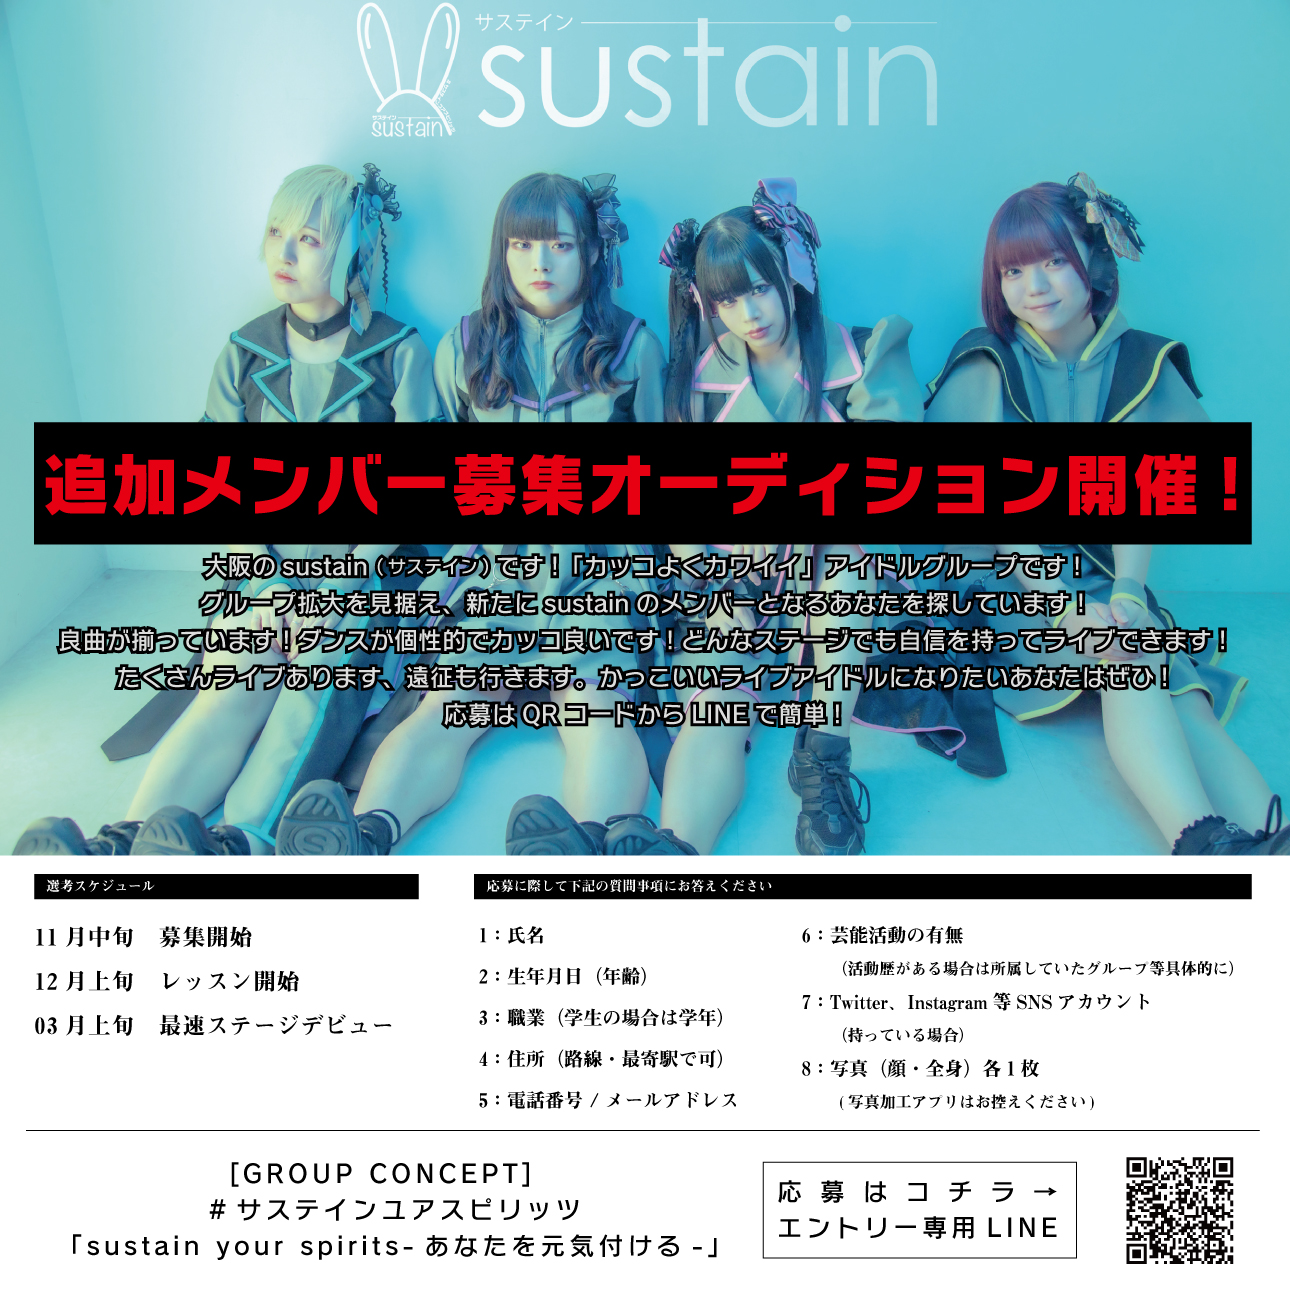 オーディション [大阪]sustain 追加メンバーオーディション かっこよく、かわいく、ライブに強いアイドルグループです 主催：sustain、カテゴリ：アイドル(東京以外)